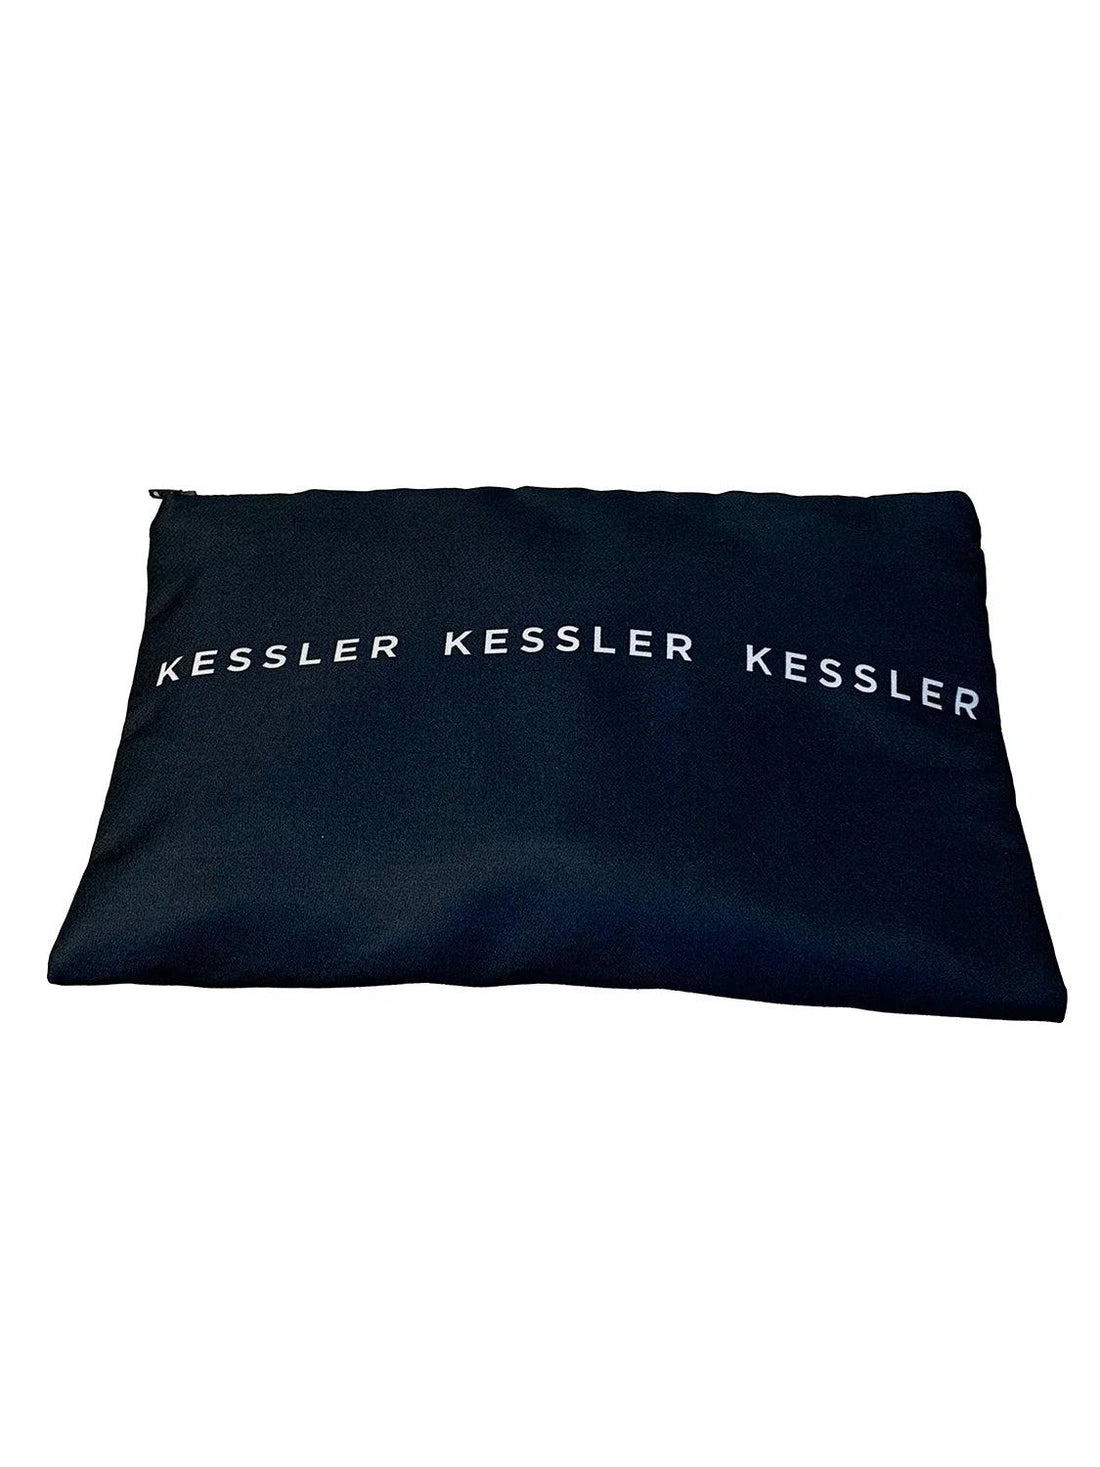 Necessaire Kessler - Kessler